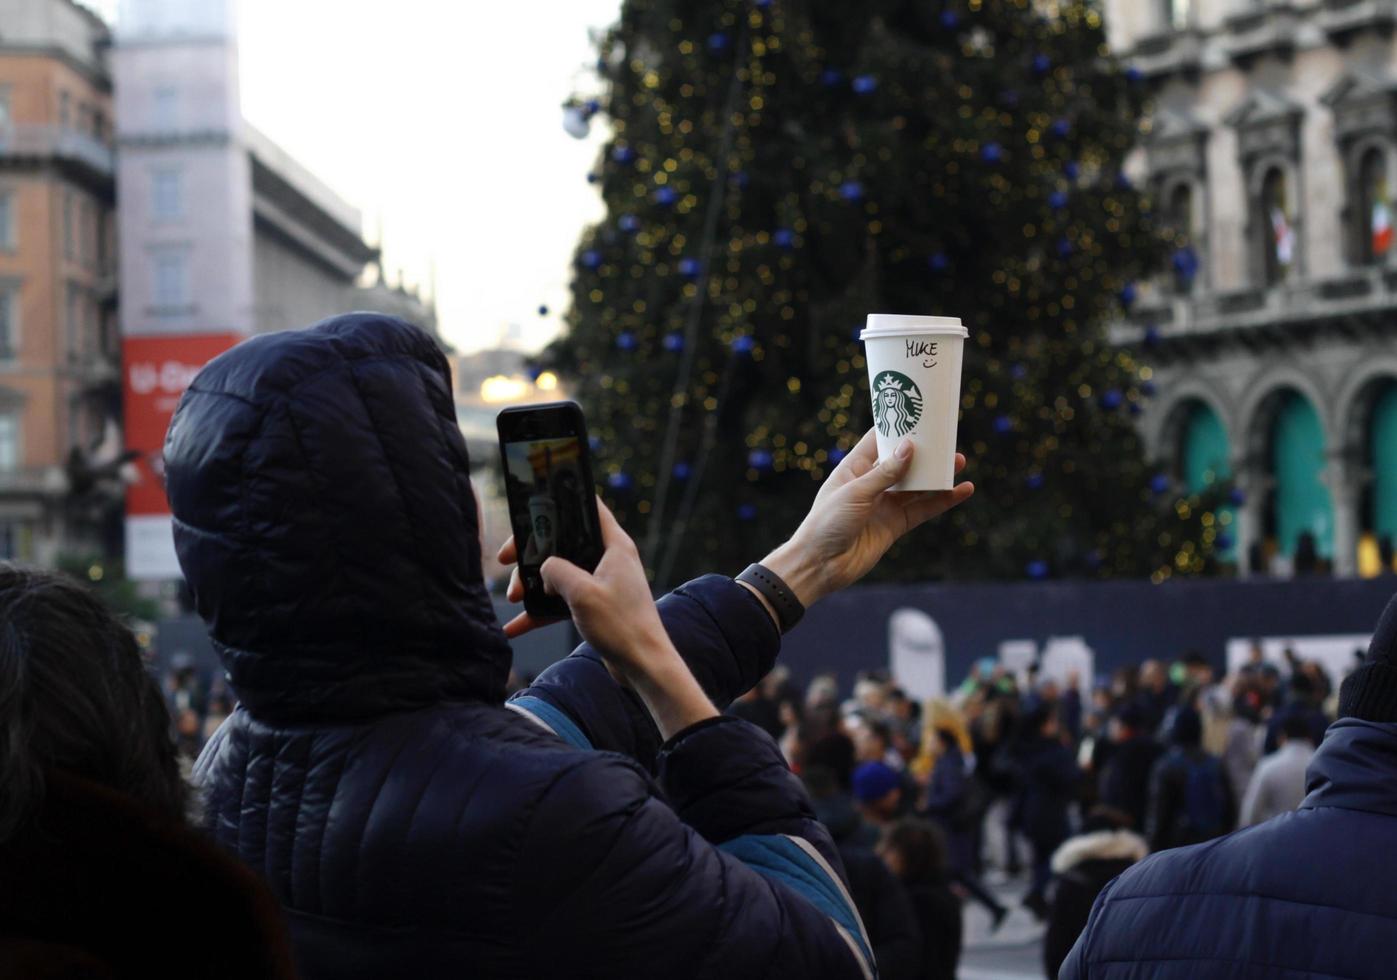 milão, itália - 14 de dezembro de 2019 - um jovem segura um copo de papel starbucks e tira uma foto dele com seu celular.